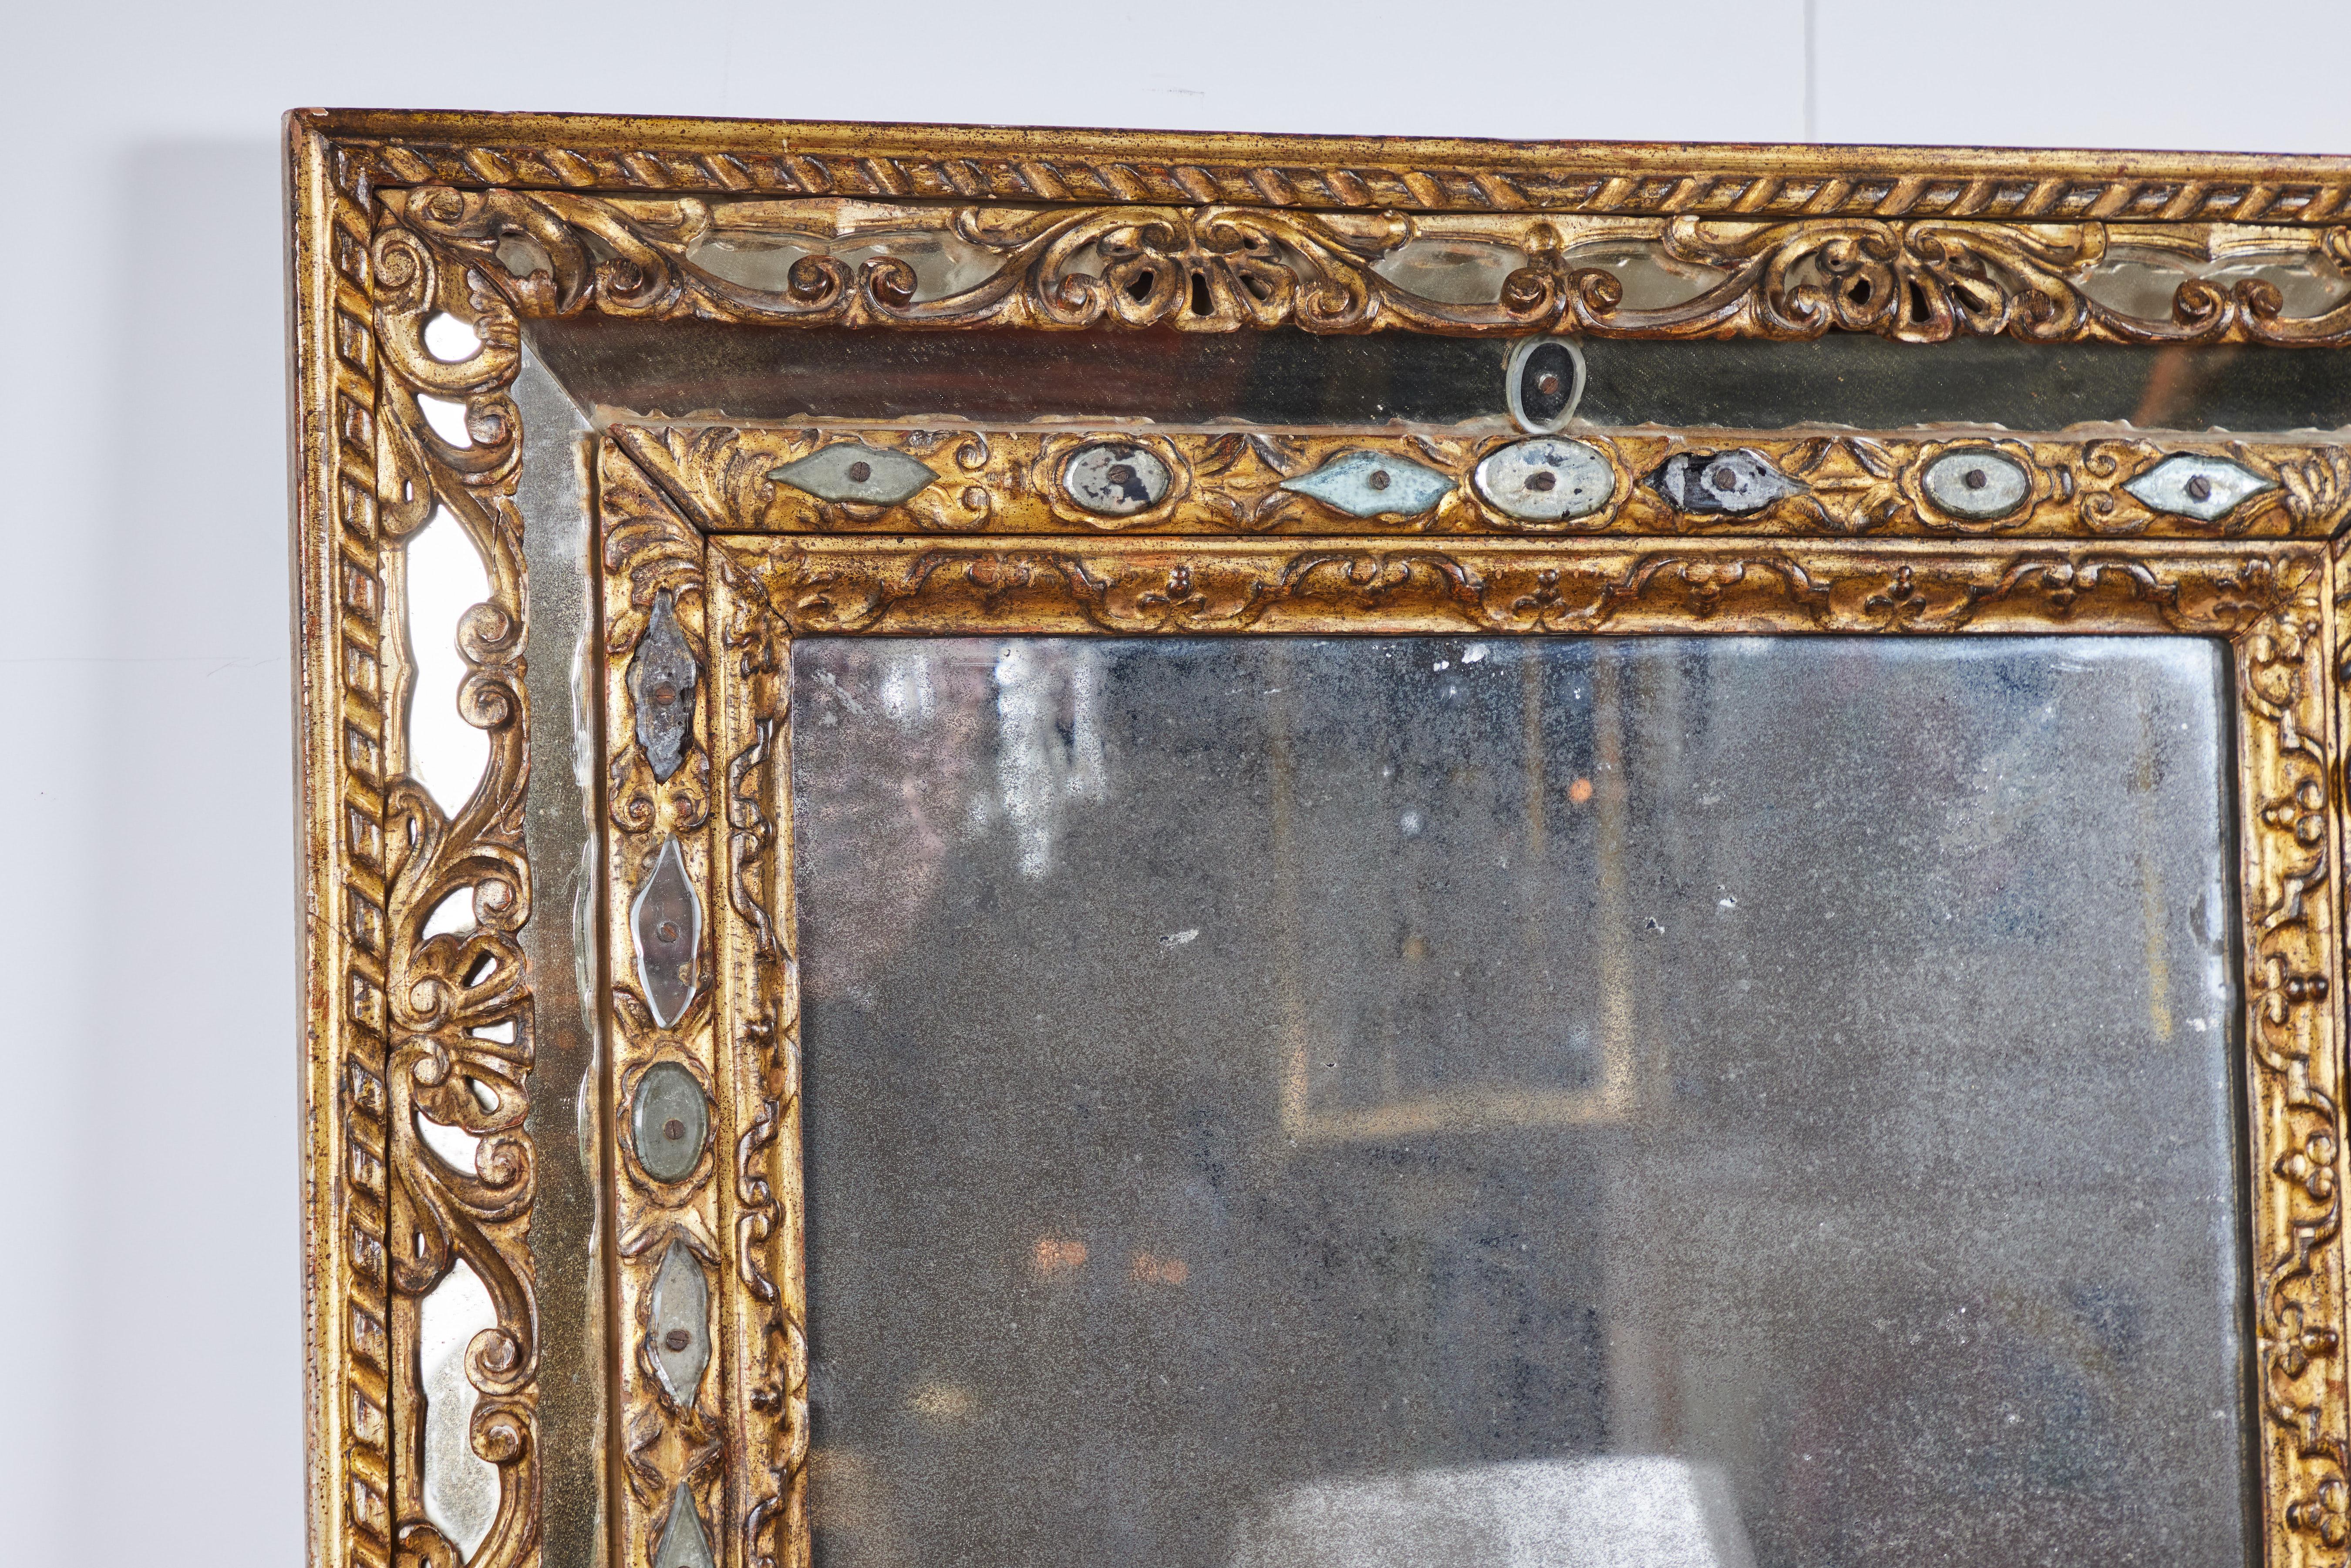 Ein eleganter geschnitzter Spiegel aus vergoldetem Holz mit geschliffenen Spiegelakzenten.  Original Diamantstaub-Spiegelglas mit Flecken und Verlust.